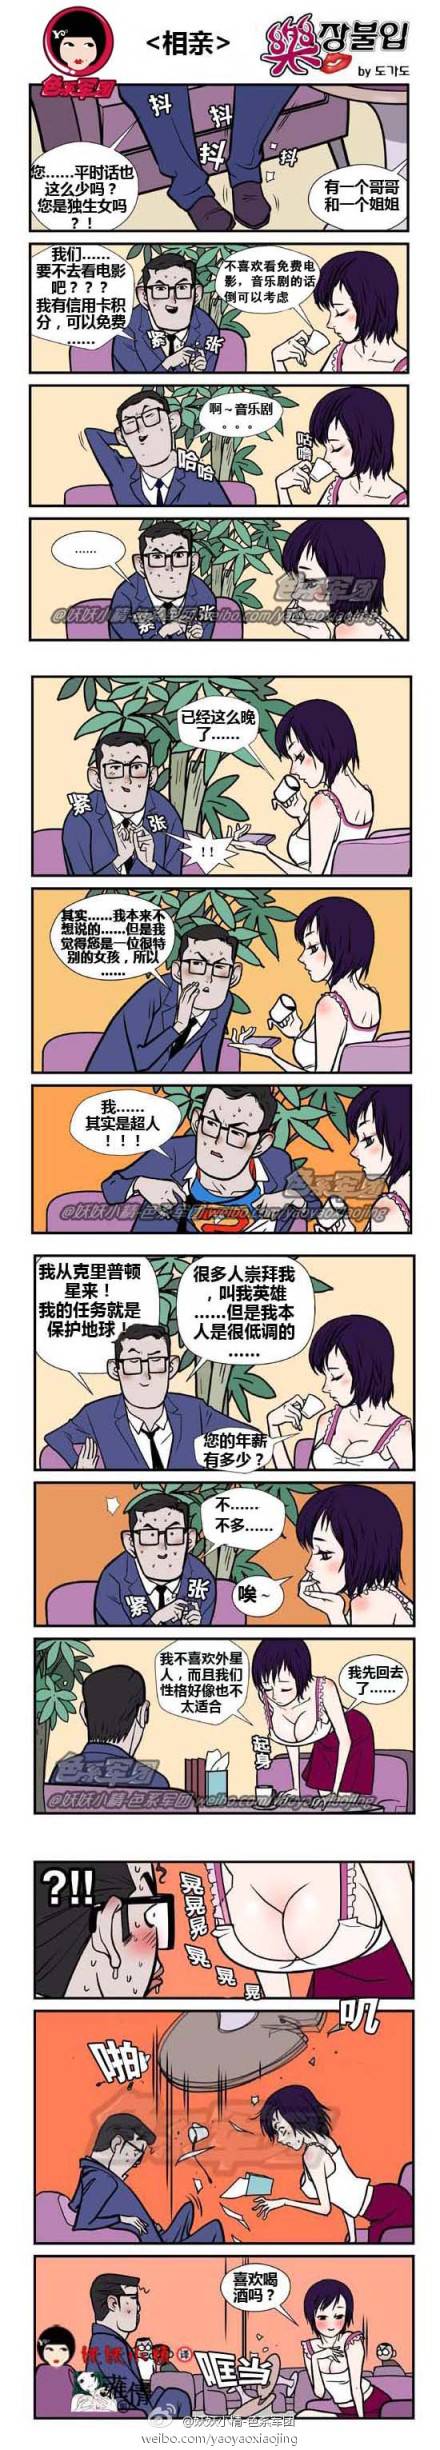 邪恶漫画爆笑囧图第26刊：搭配